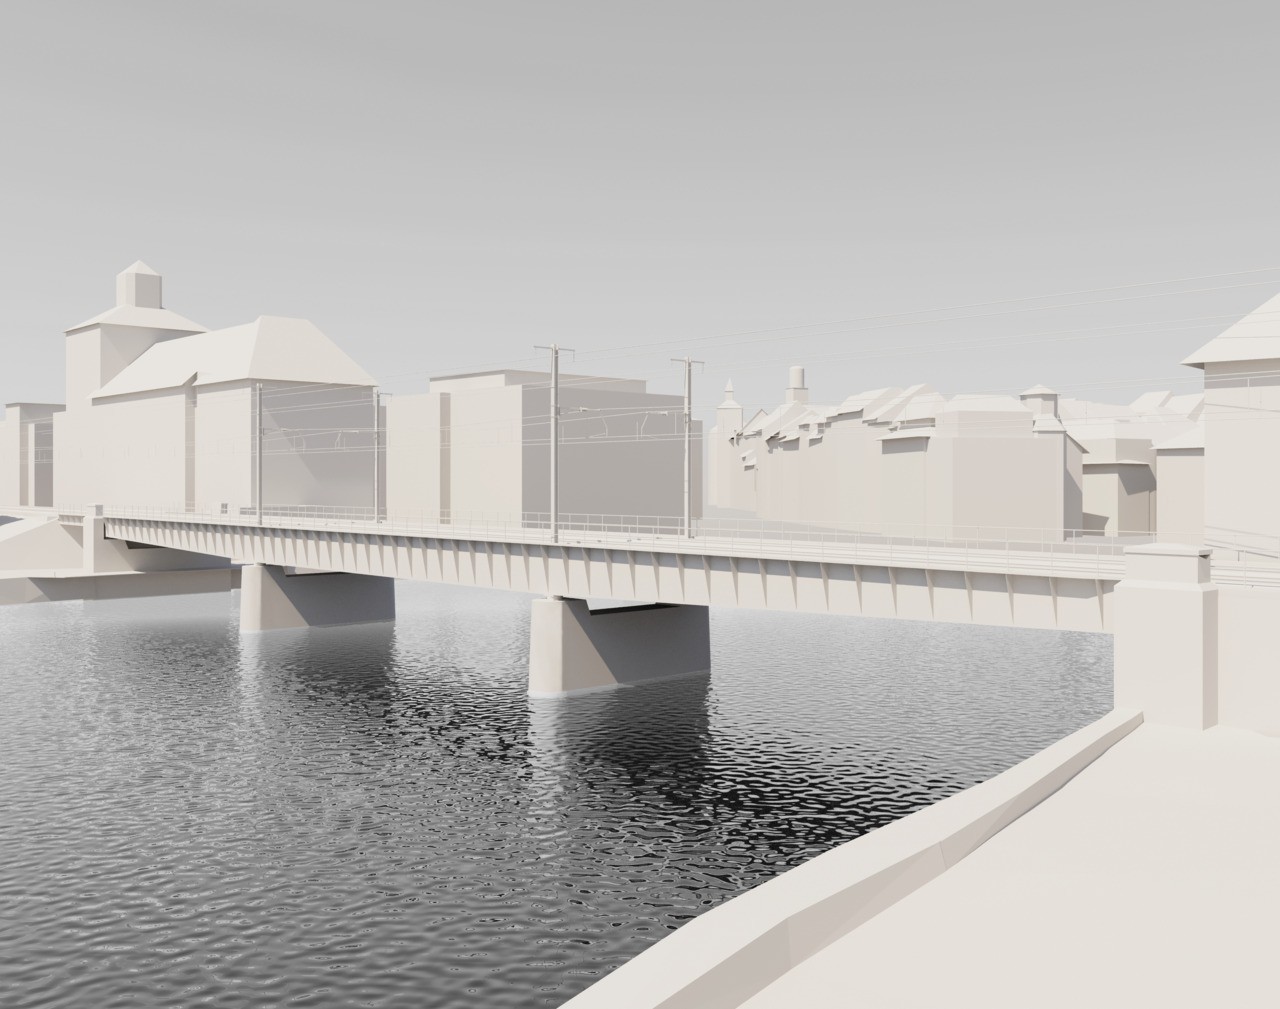 Modell der neuen Aarebrücke